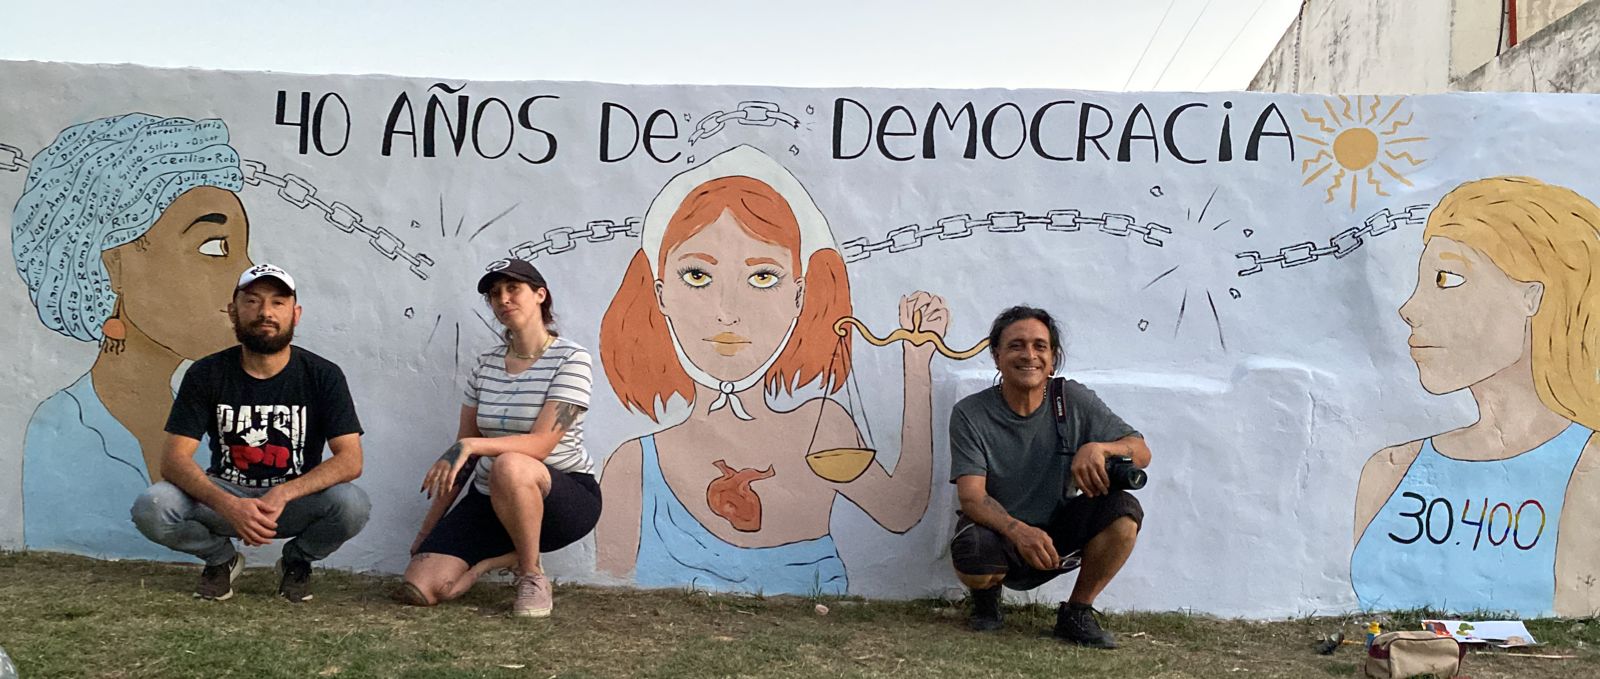 Pintaron un mural por los 40 años de democracia